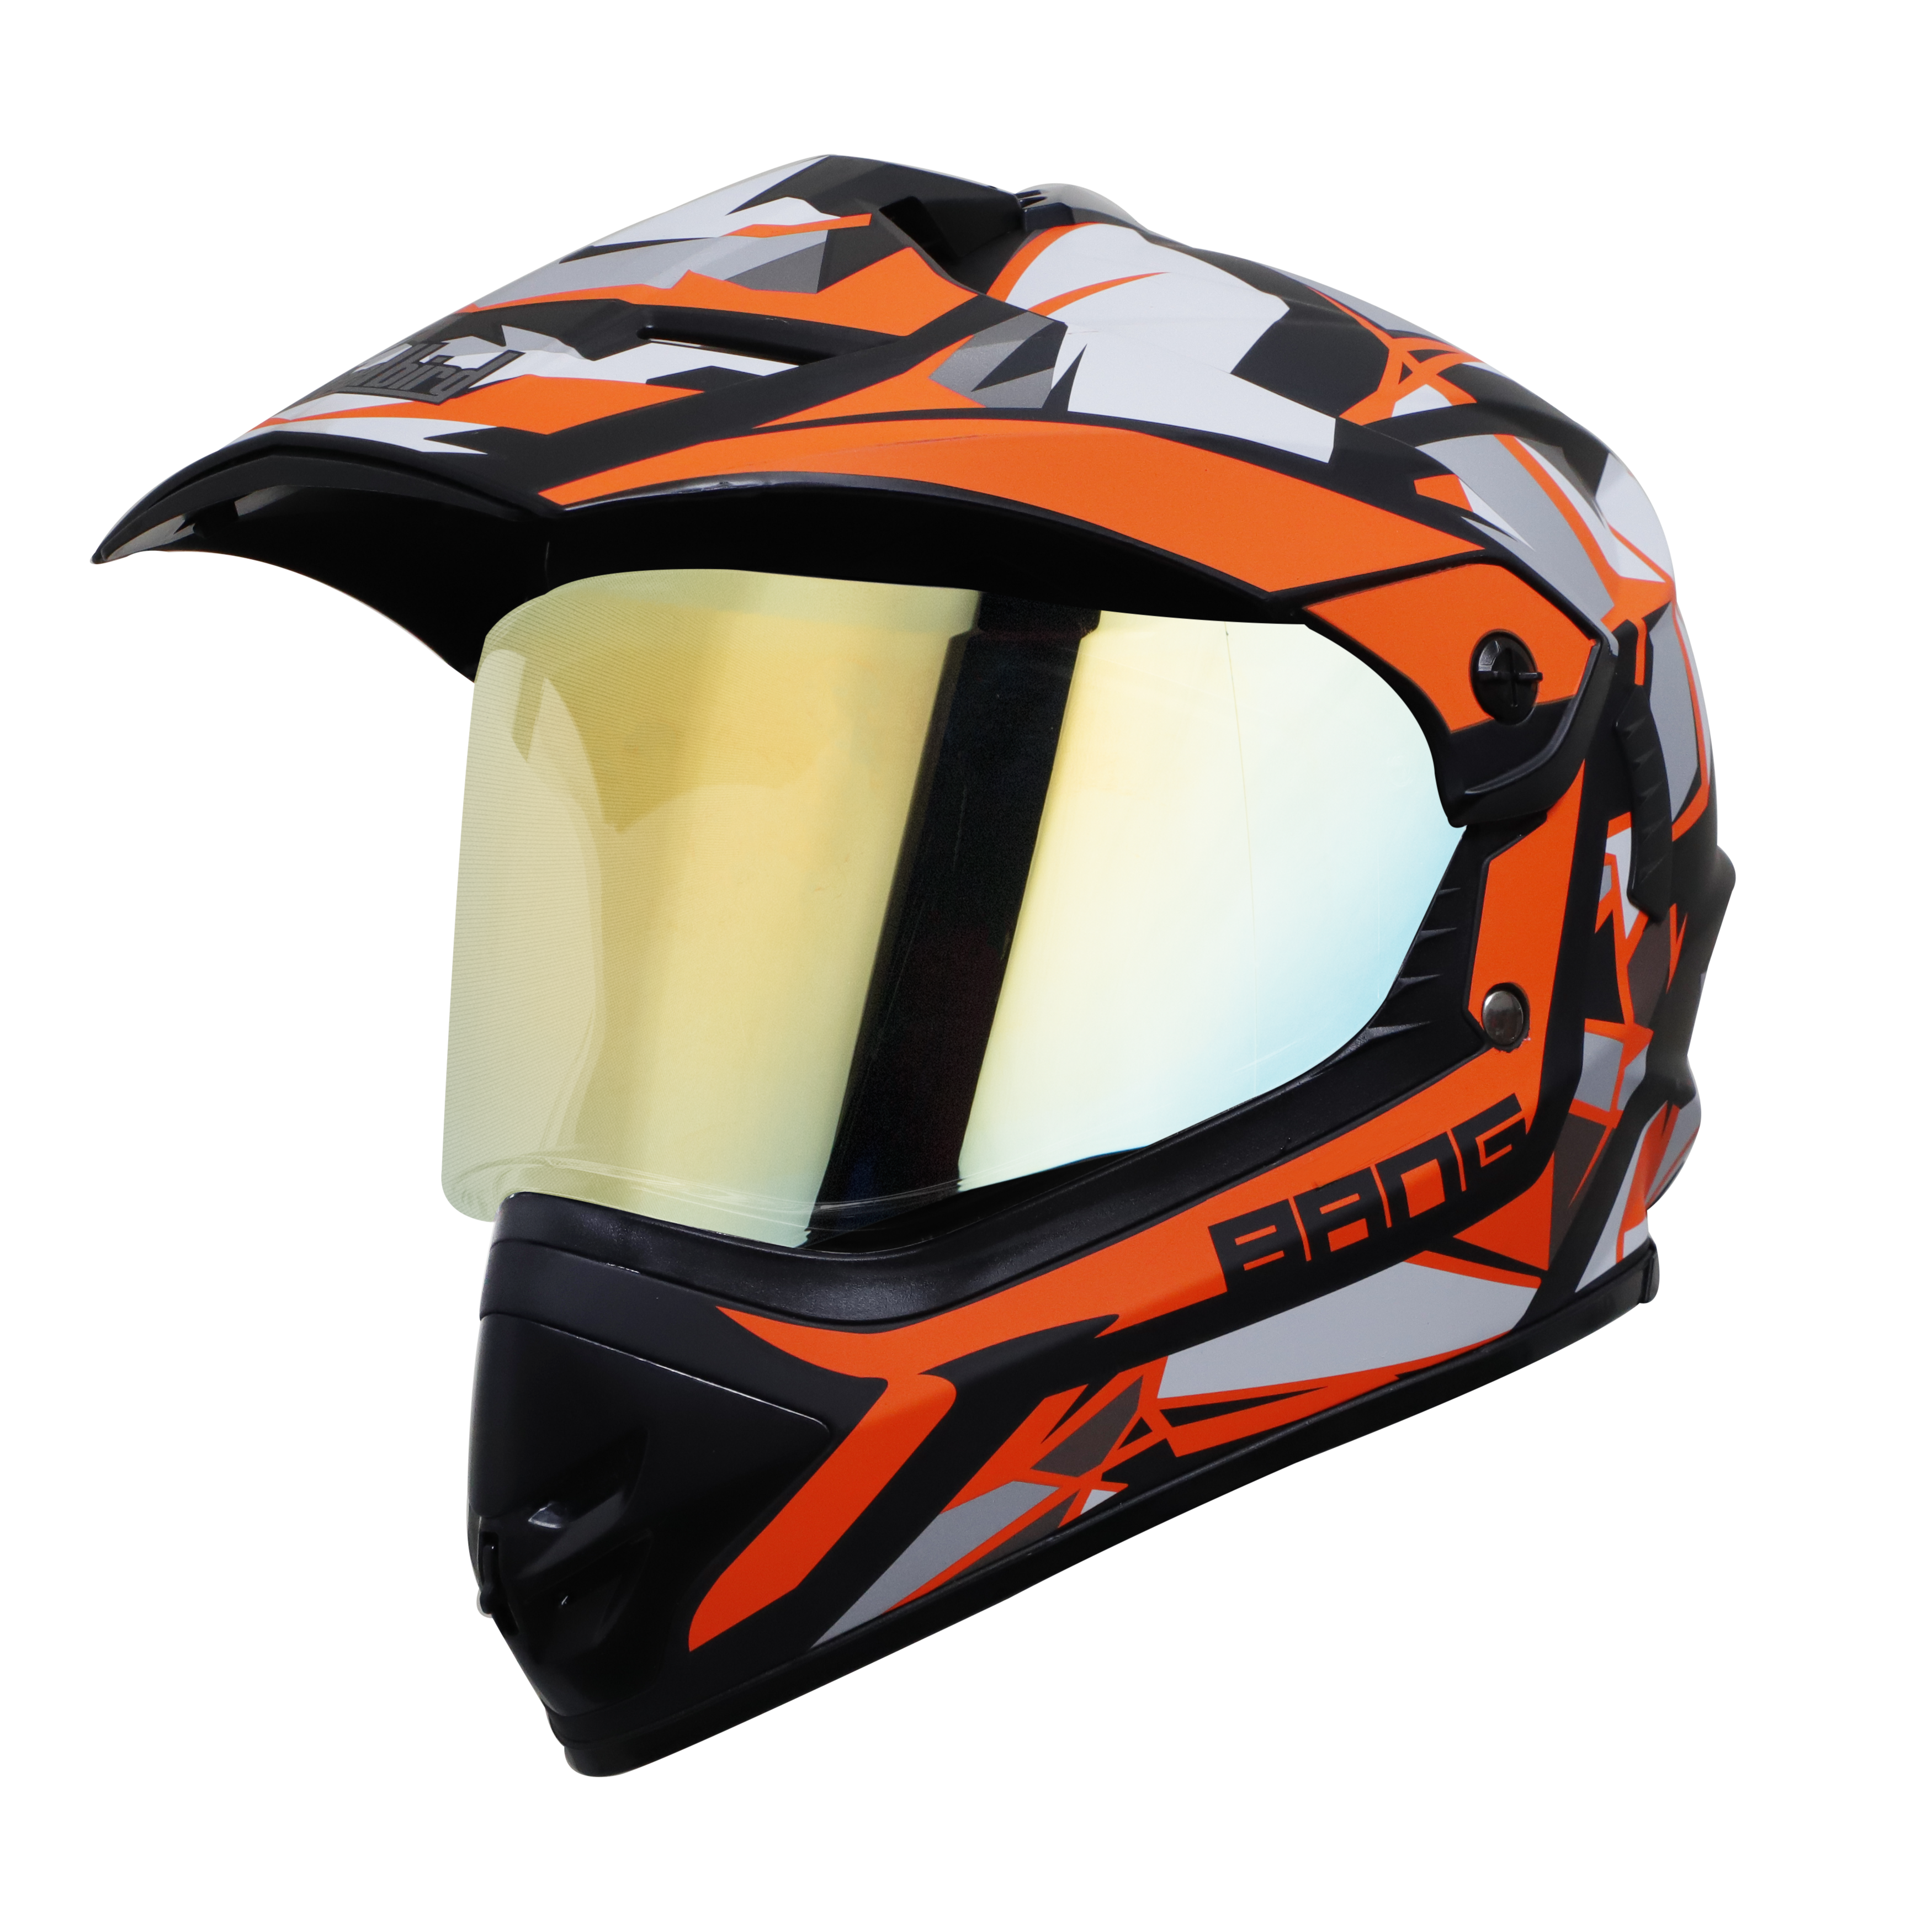 Steelbird Off Road Bang KTN ISI Certified ABS Material Shell Motocross Helmet (Matt Black Orange With Chrome Gold Visor)